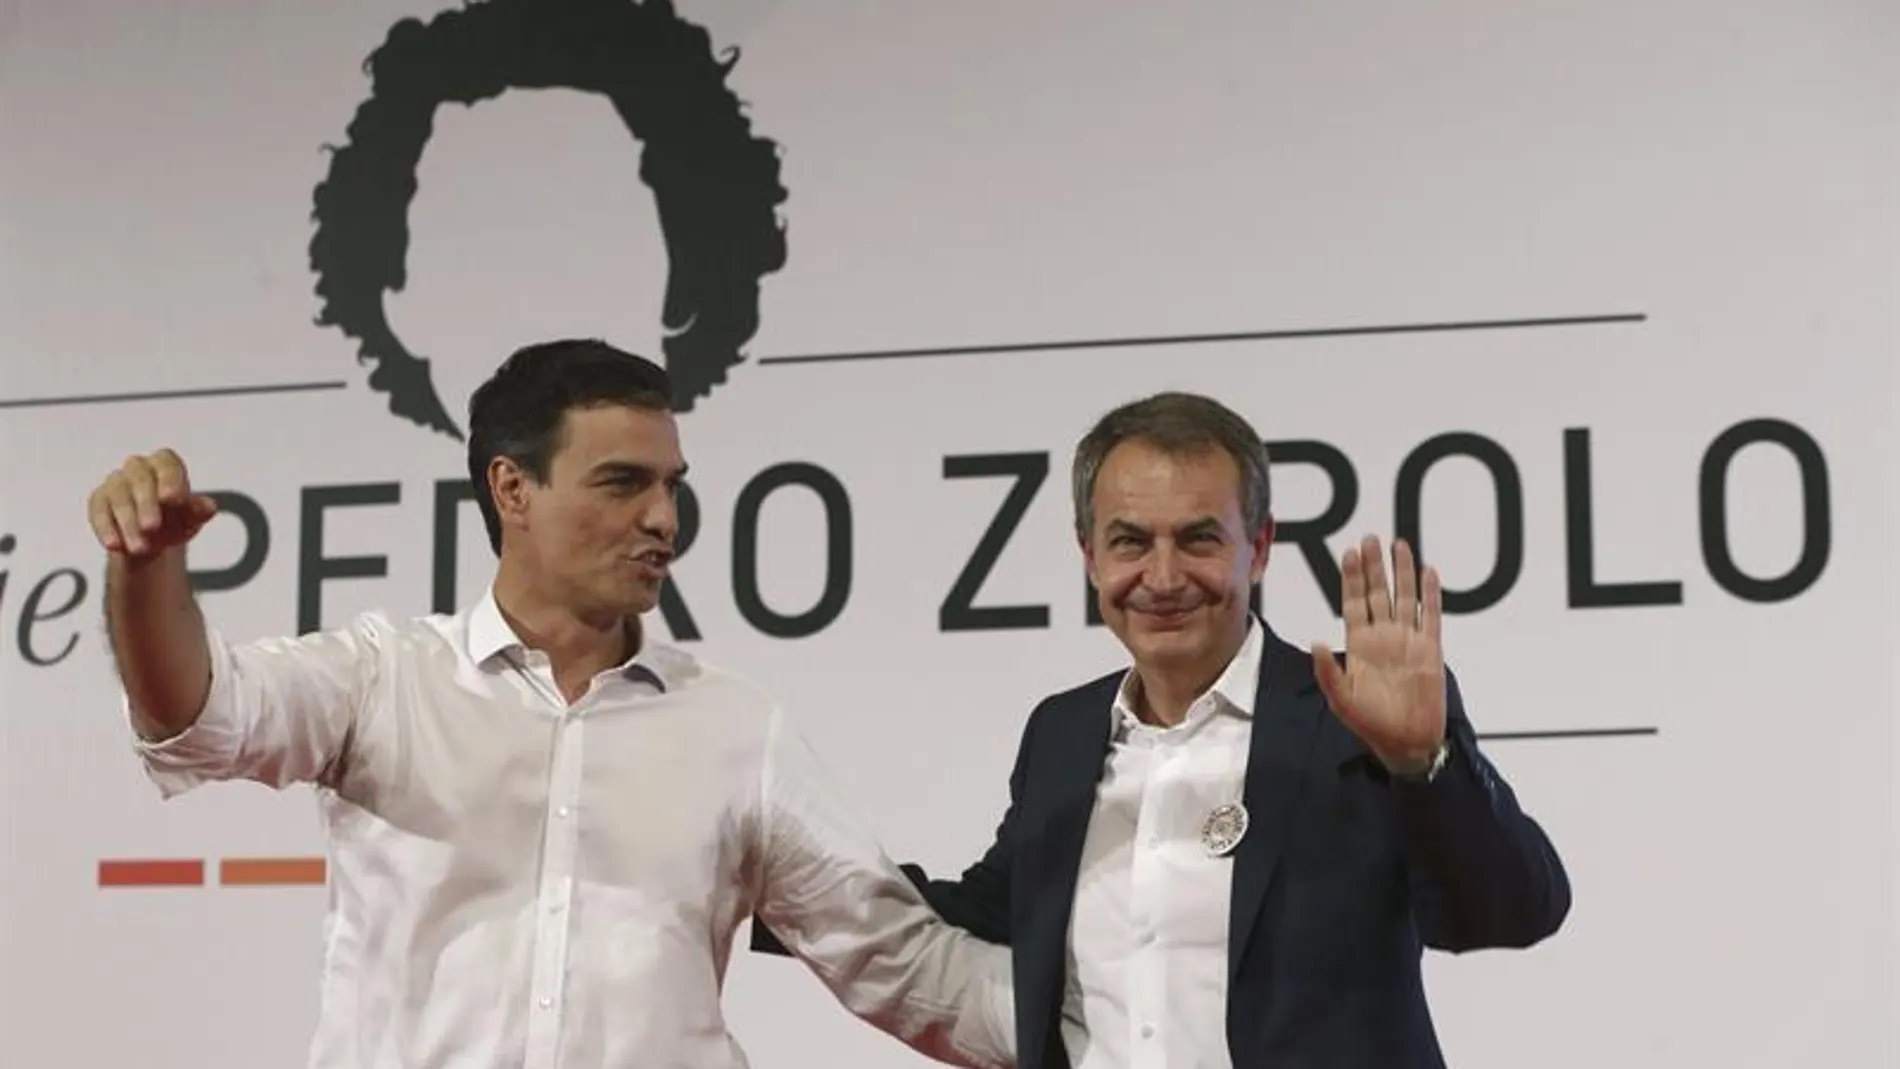 El PSOE rinde homenaje a Zerolo en el 10º aniversario de la Ley del matrimonio gay